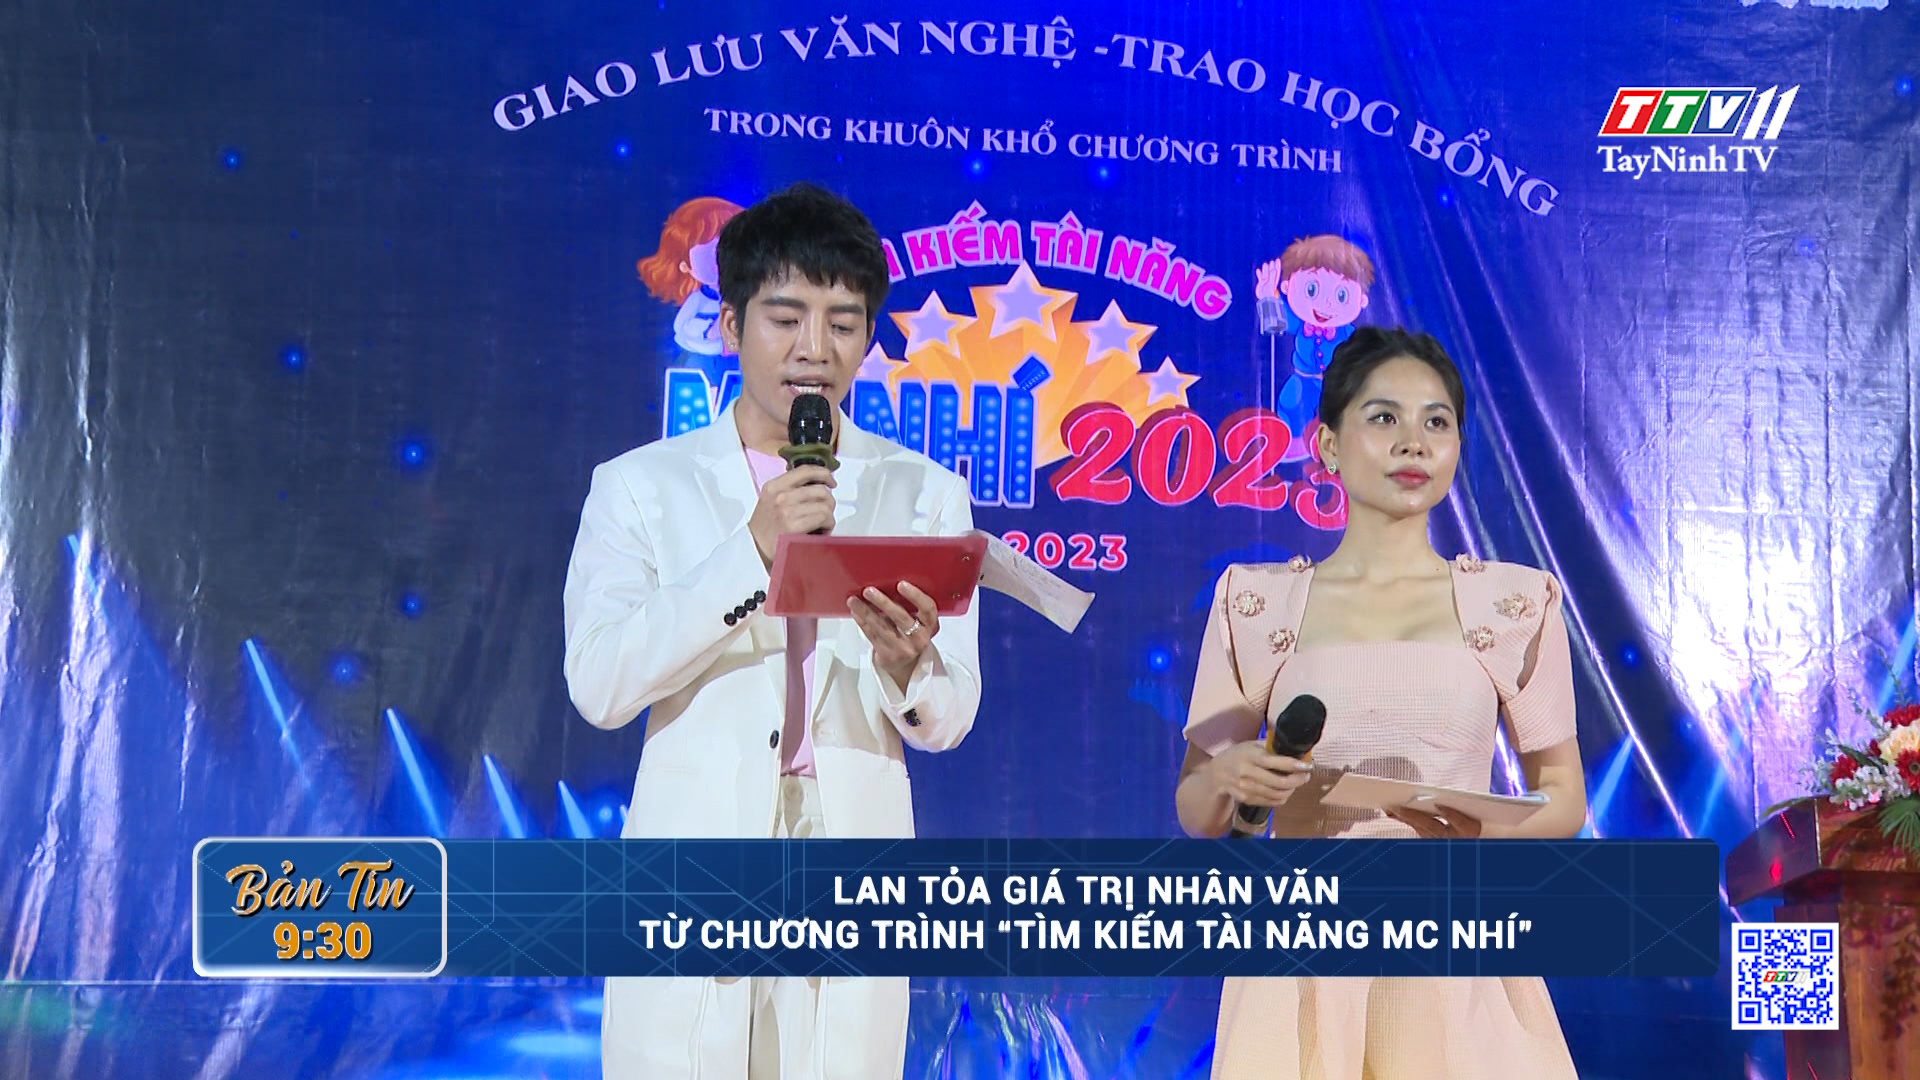 Lan tỏa giá trị nhân văn từ Chương trình “Tìm kiếm tài năng MC nhí” | TayNinhTV